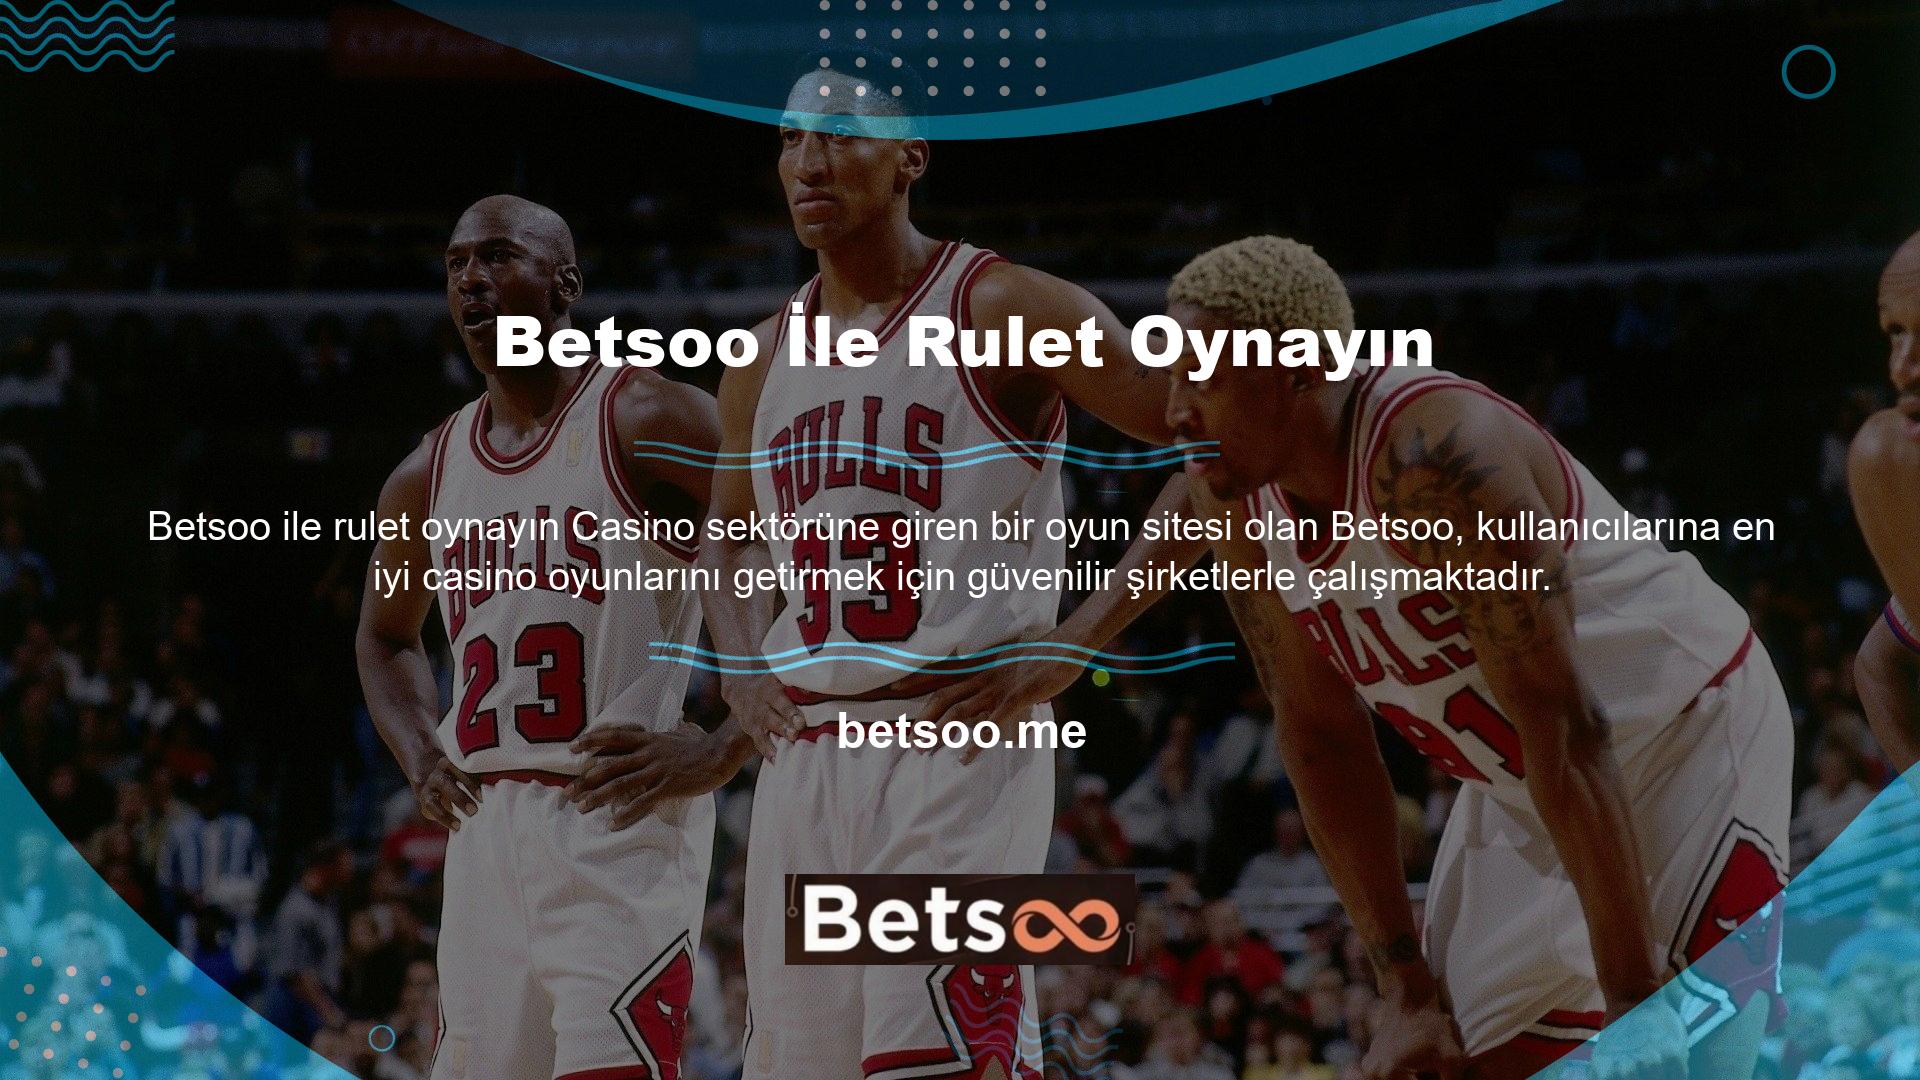 Casino oyunlarında yaygın olarak kullanılan rulet oyunu, oyunla ilgili video ve fotoğraflar paylaşarak Betsoo ile rulet Betsoo ile rulet oynayın kazanmasını kolaylaştırır